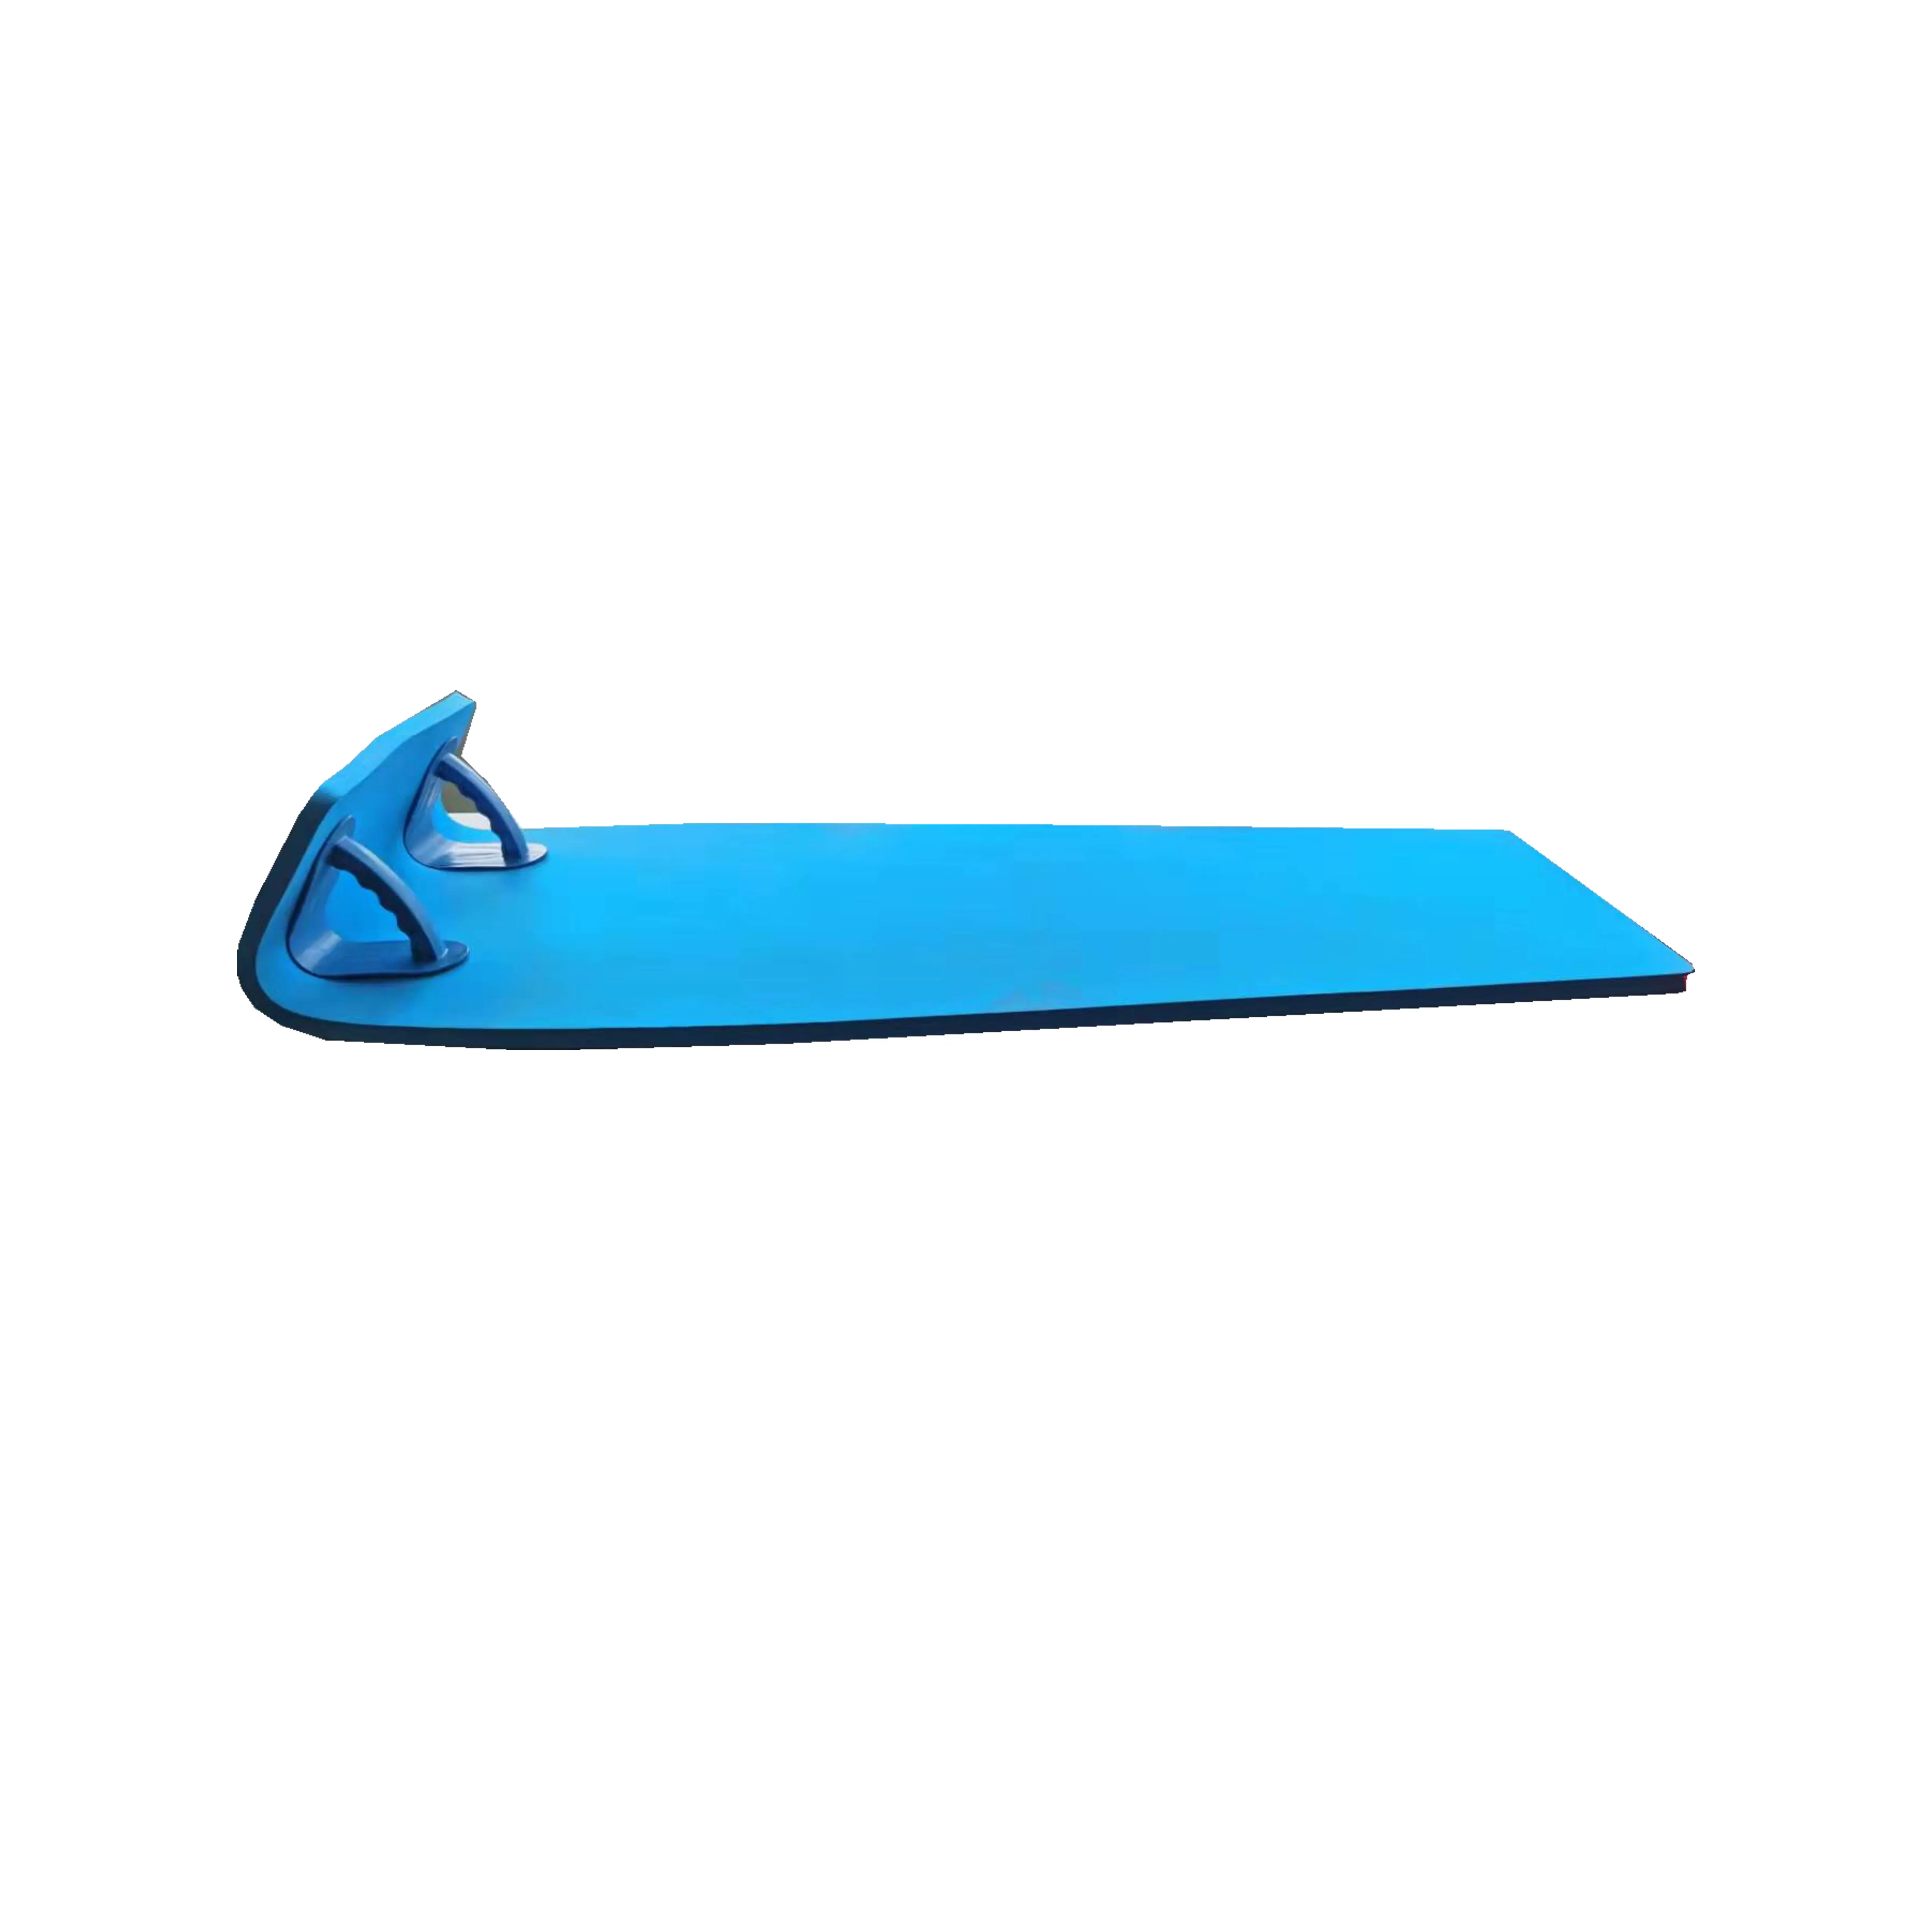 Tappetino Racer per acquascivolo in schiuma EVA con stampa personalizzata blu di alta qualità con manici in PP per adulti